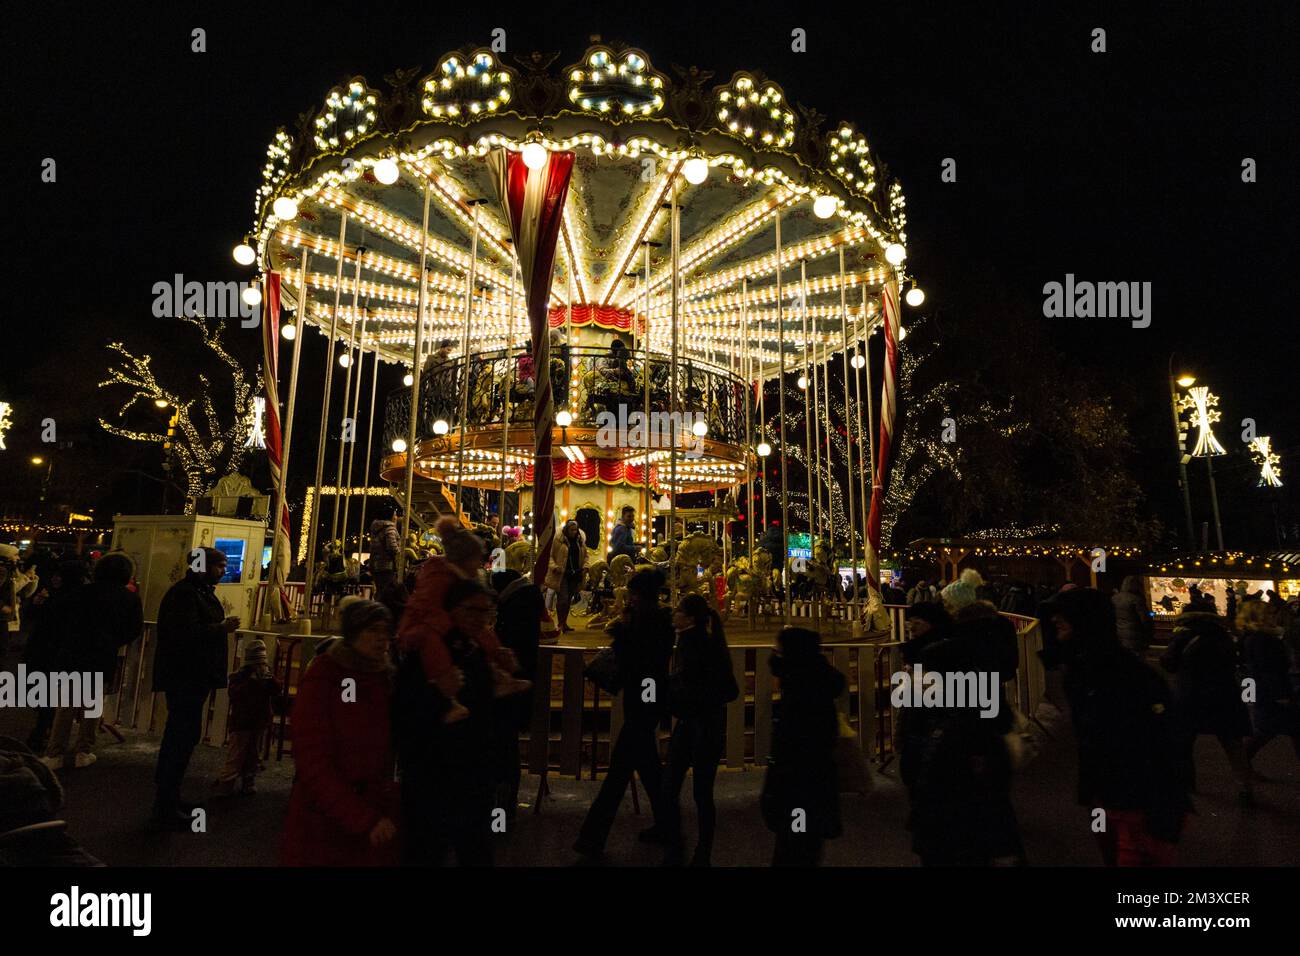 Traditional merry-go-round at Wiener Christkindlmarkt, Rathaus Platz (City Hall Square), Vienna, Austria Stock Photo